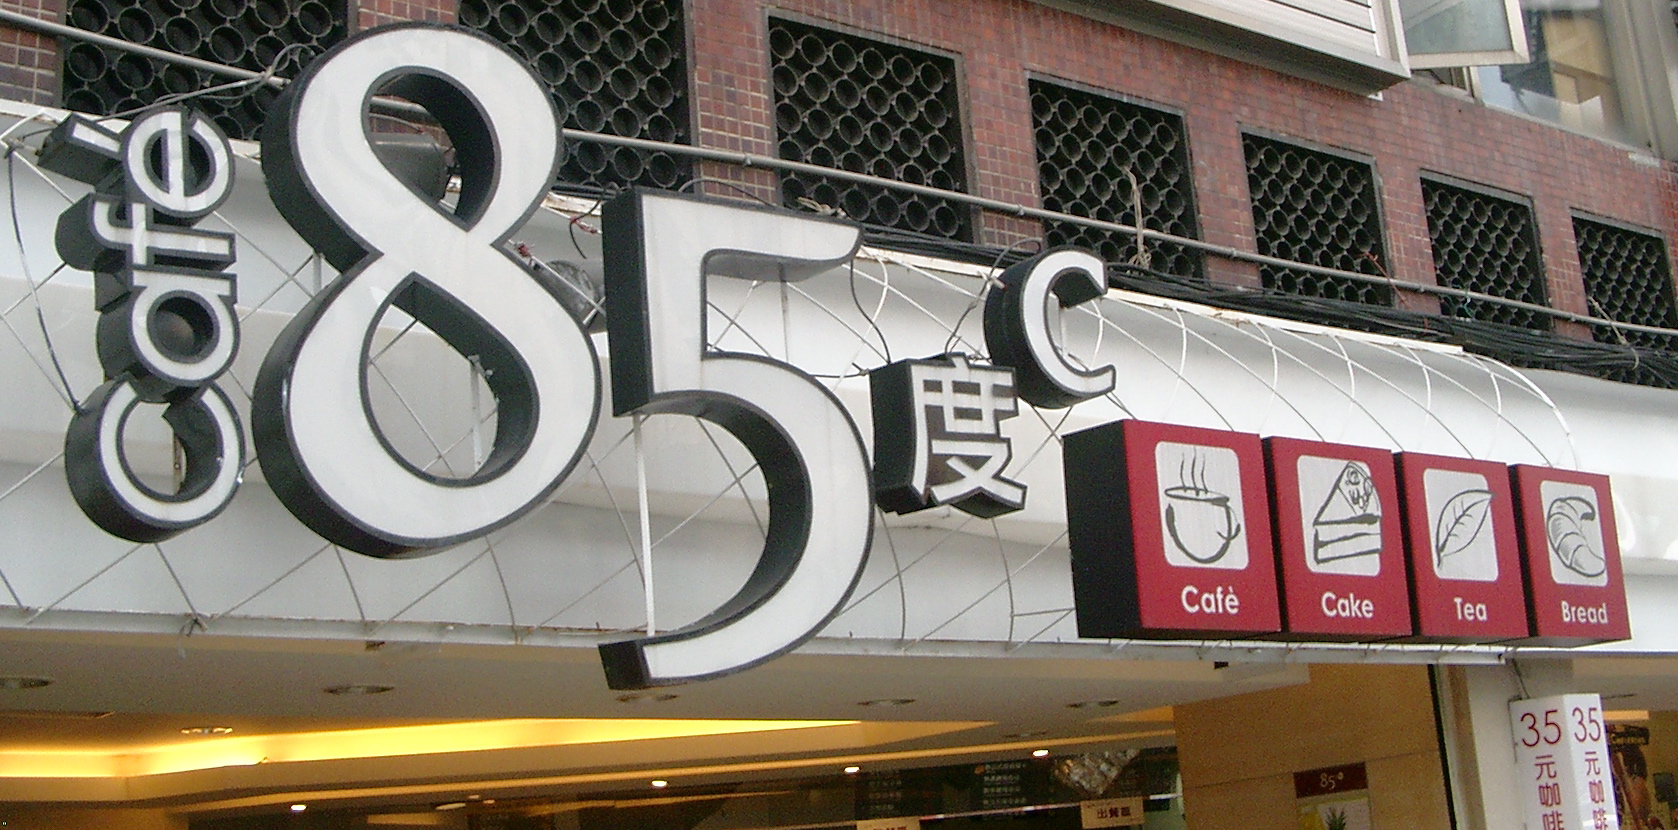 85c Cafe